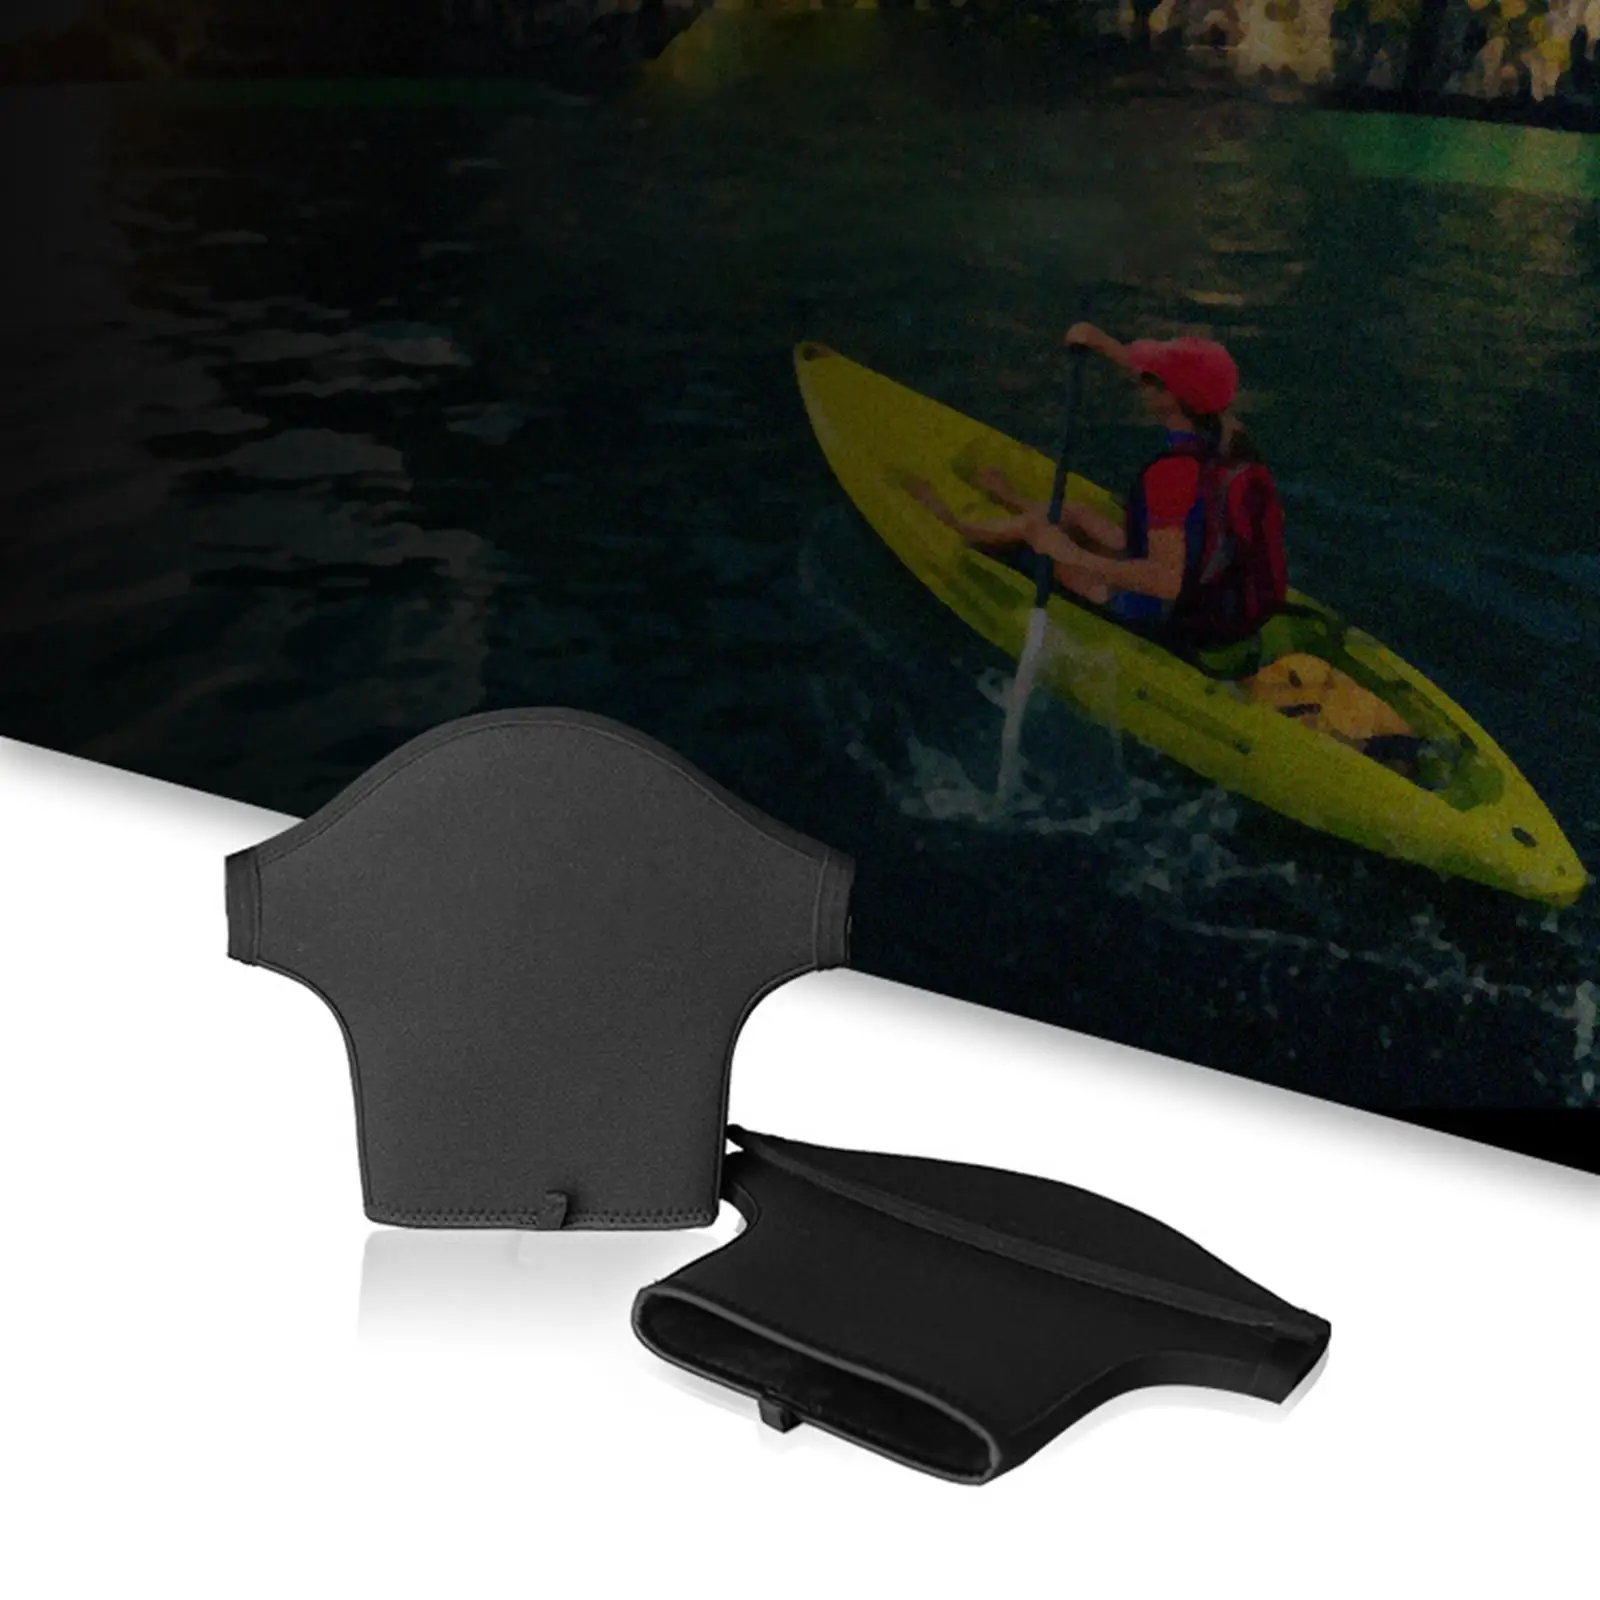 2x Kayak Paddle Mitts Neoprene Anti Skid Hand Protective Mitten